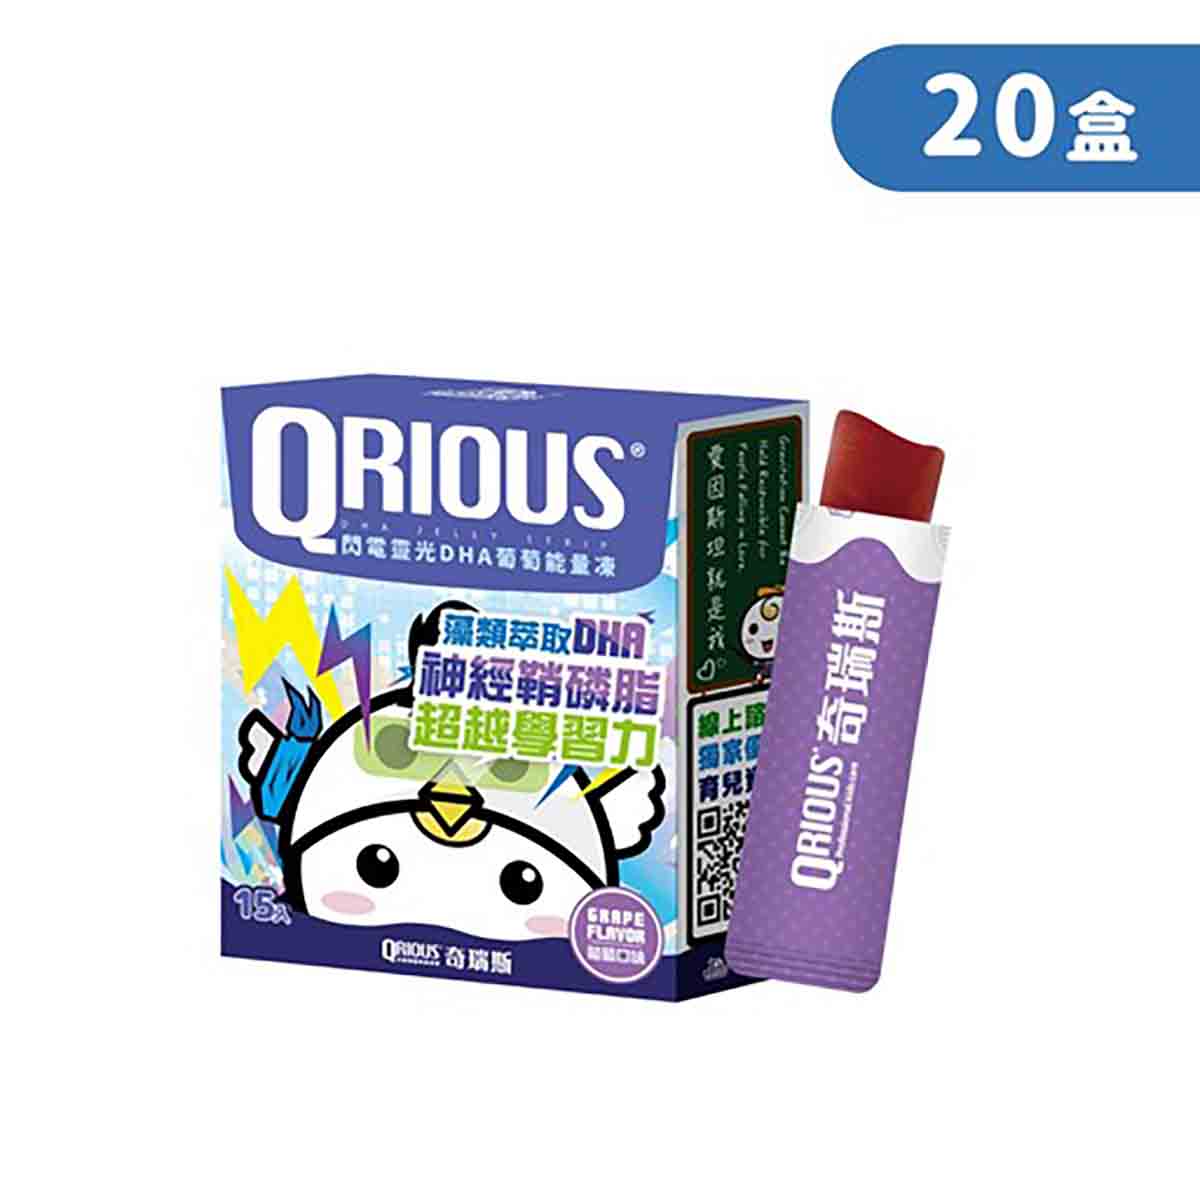 【快轉學習力】QRIOUS®奇瑞斯閃電靈光 DHA＋神經鞘磷脂葡萄能量凍 (20盒)